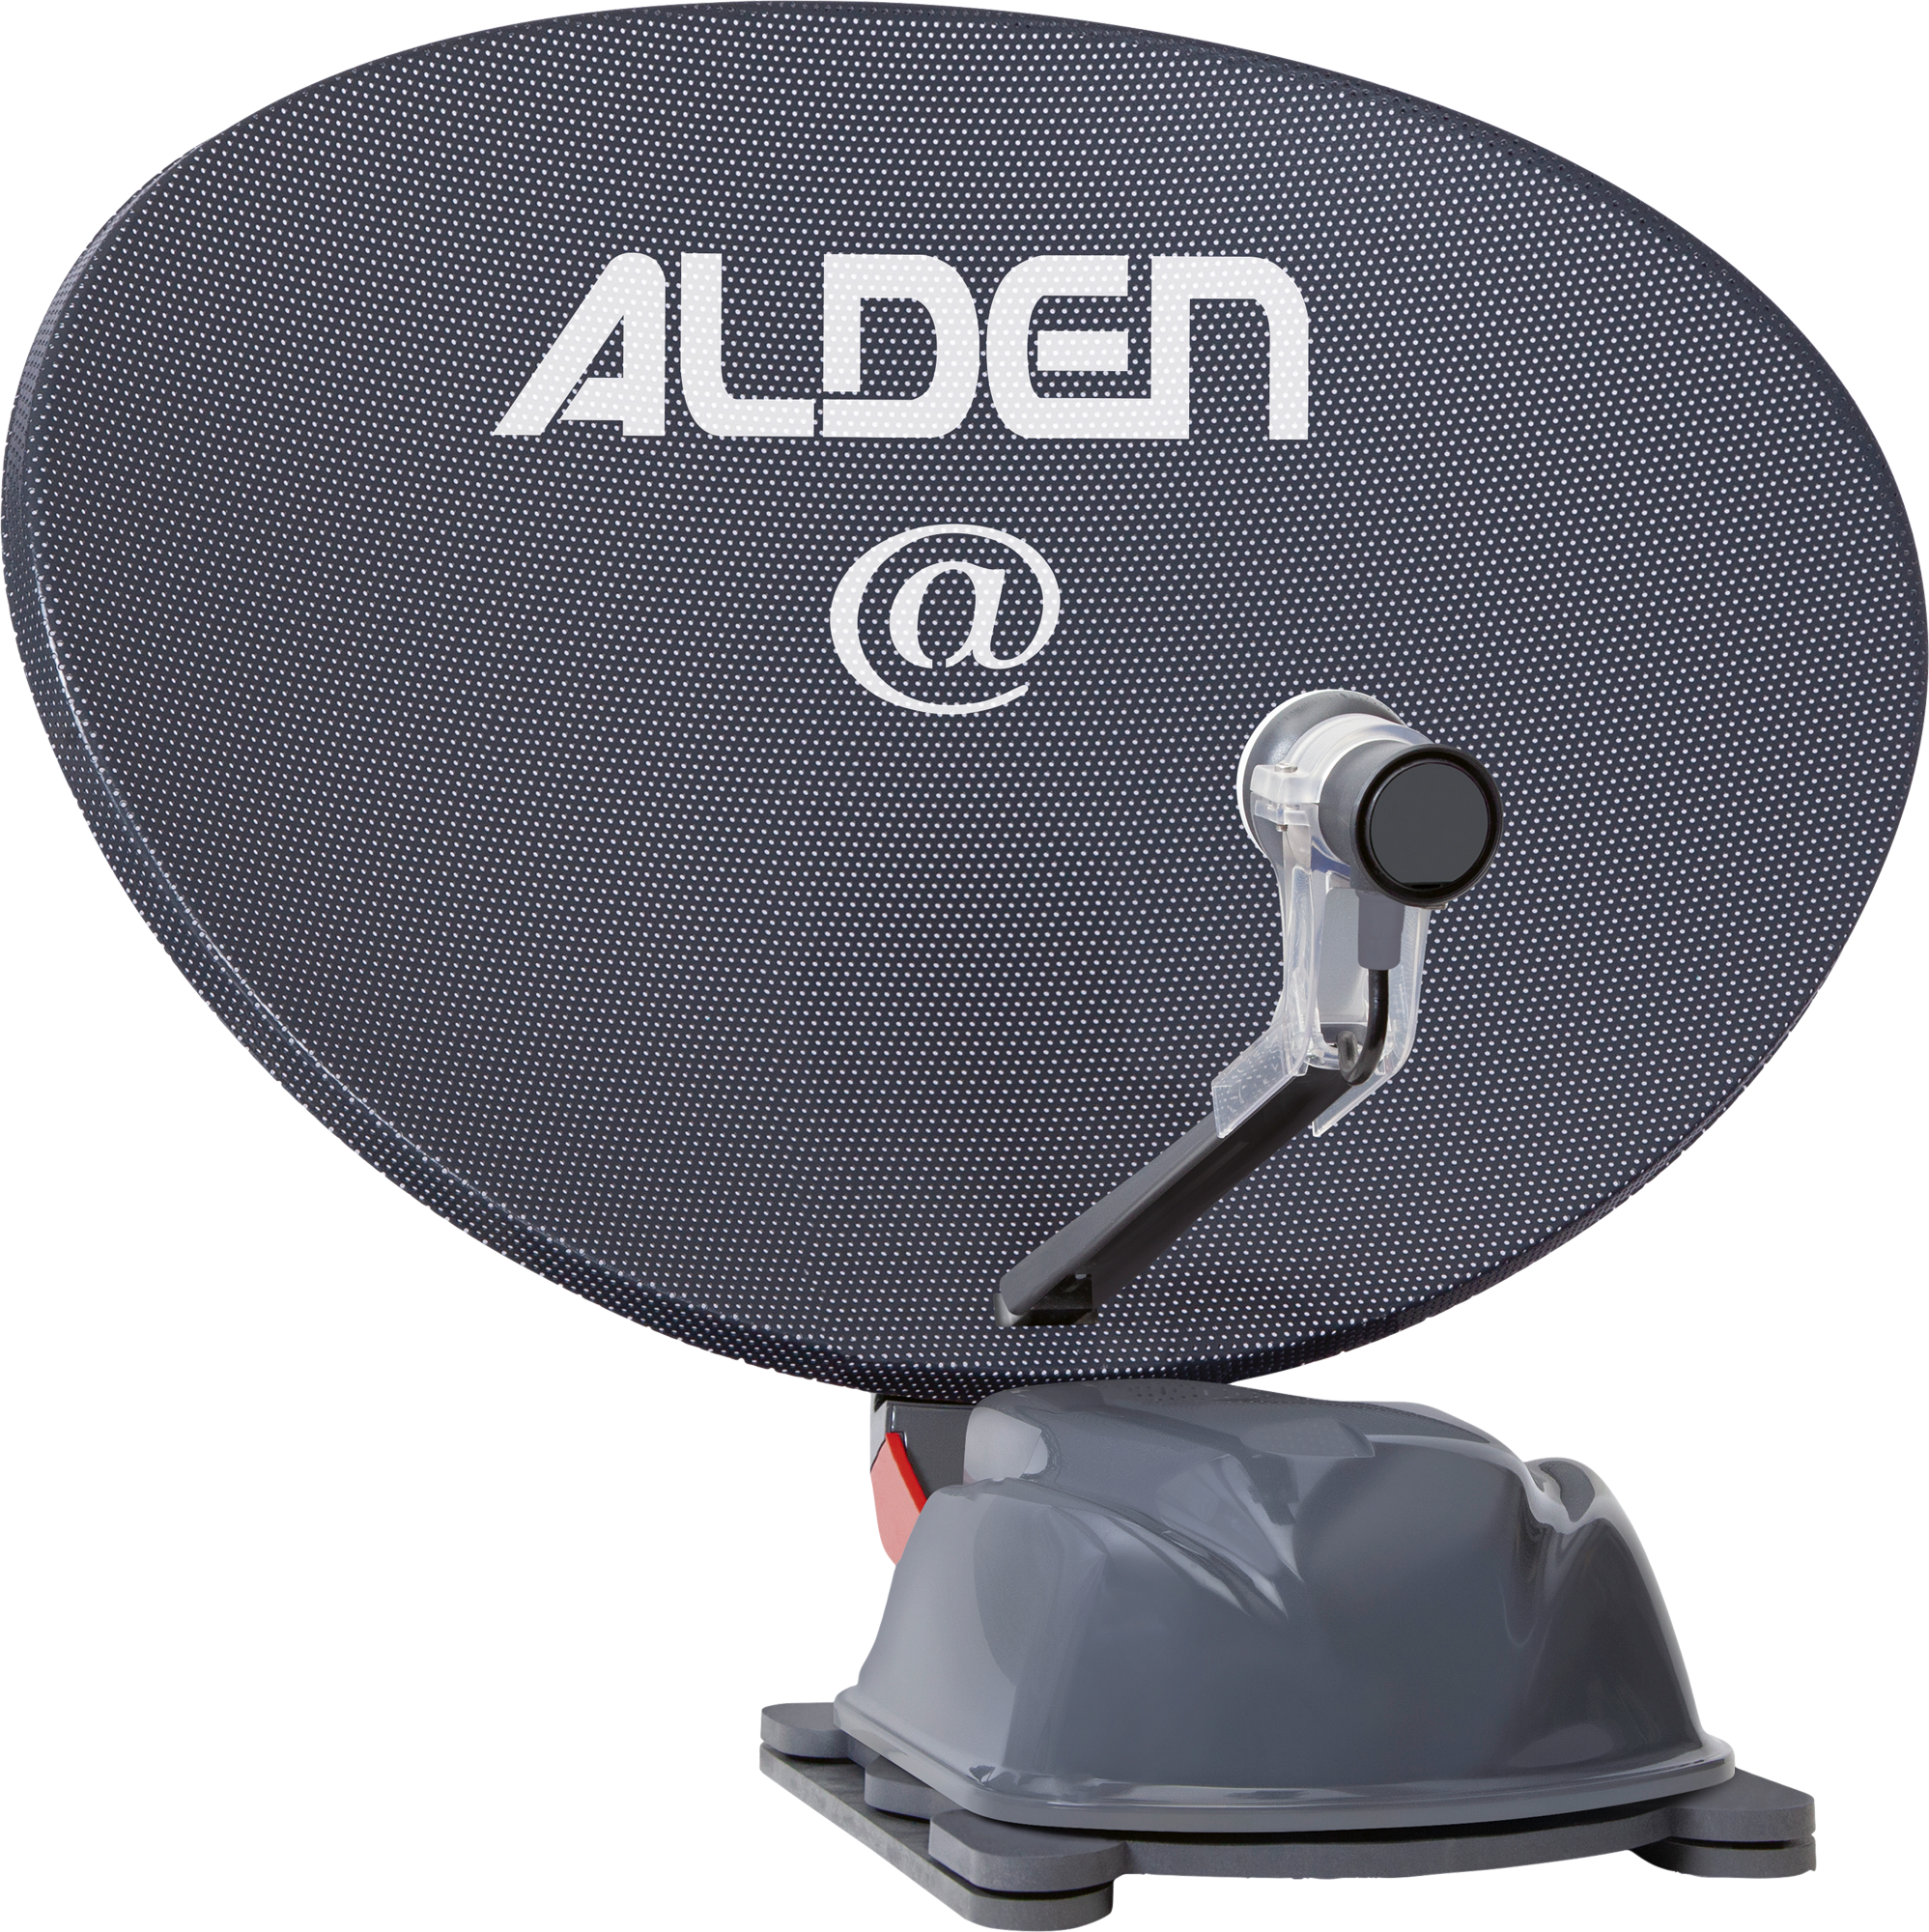 Alden AS2@ 80 HD Platinium vollautomatische Satellitenanlage inklusive LTE Antenne und A.I.O. Smart TV mit integriertem Receiver und Antennensteuerung 22 Zoll